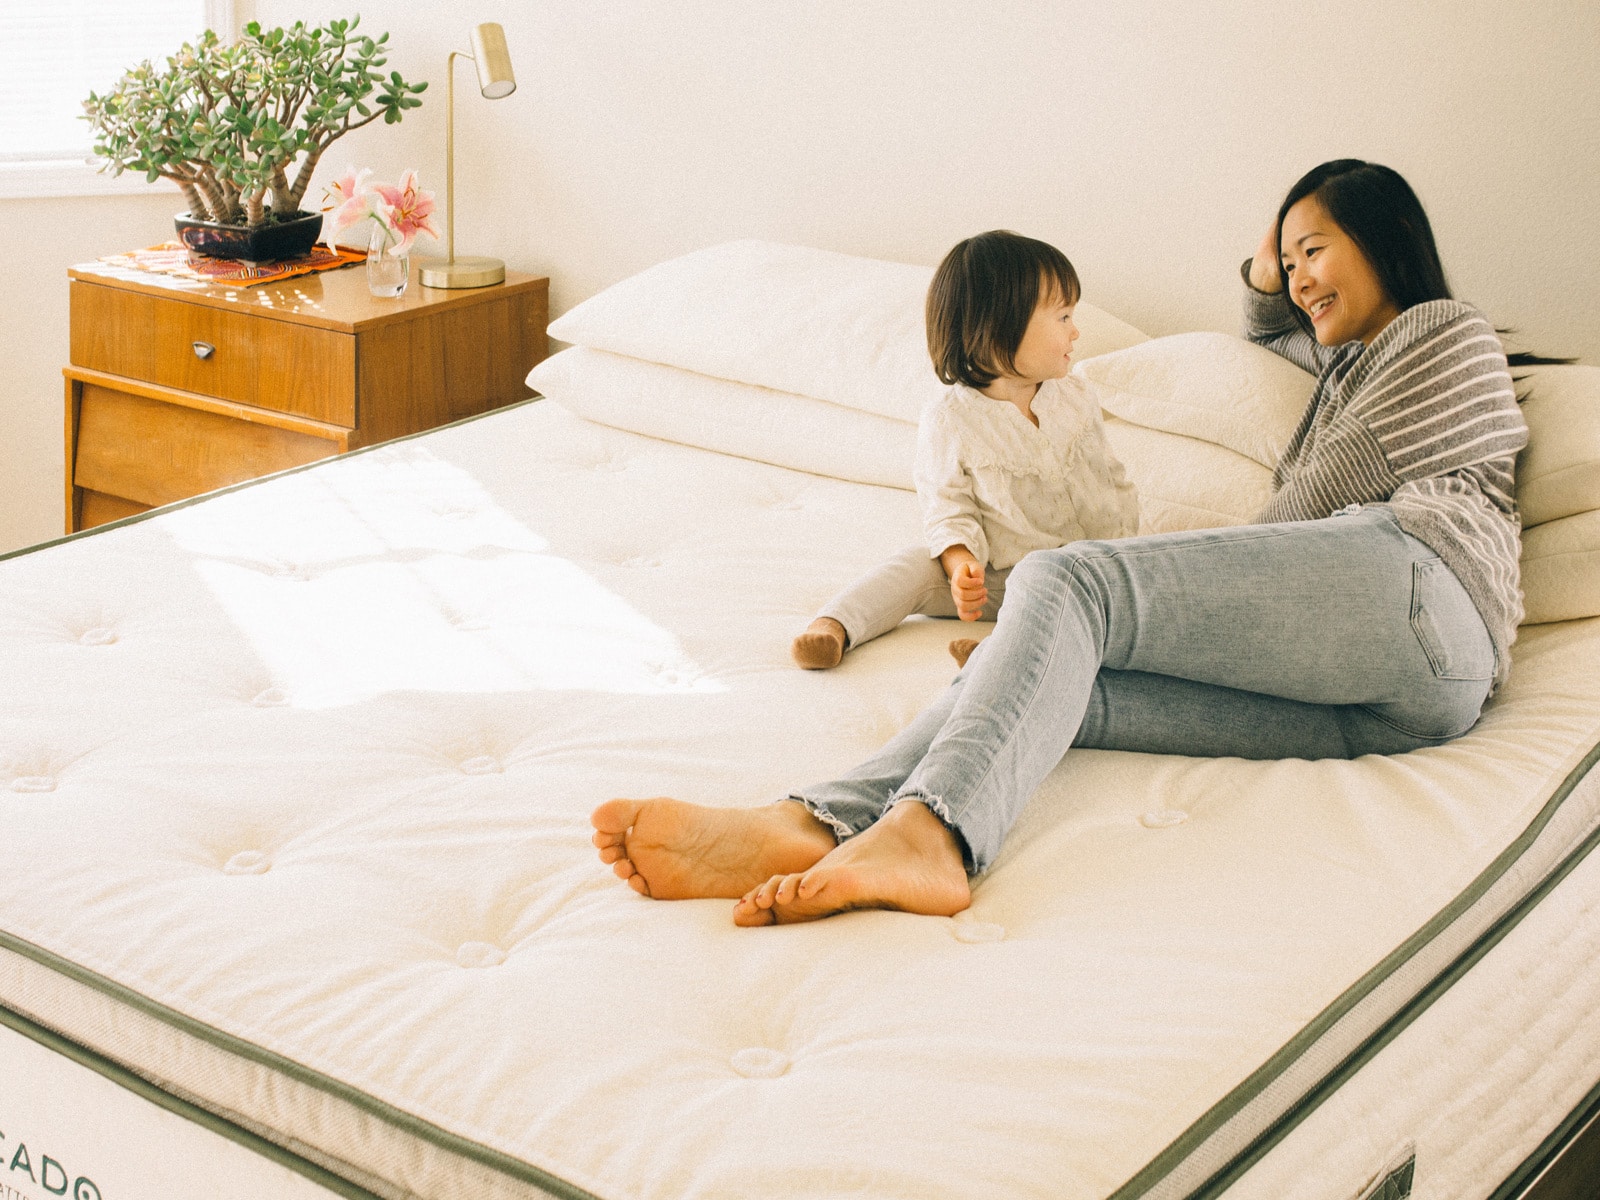 A kid-friendly organic mattress